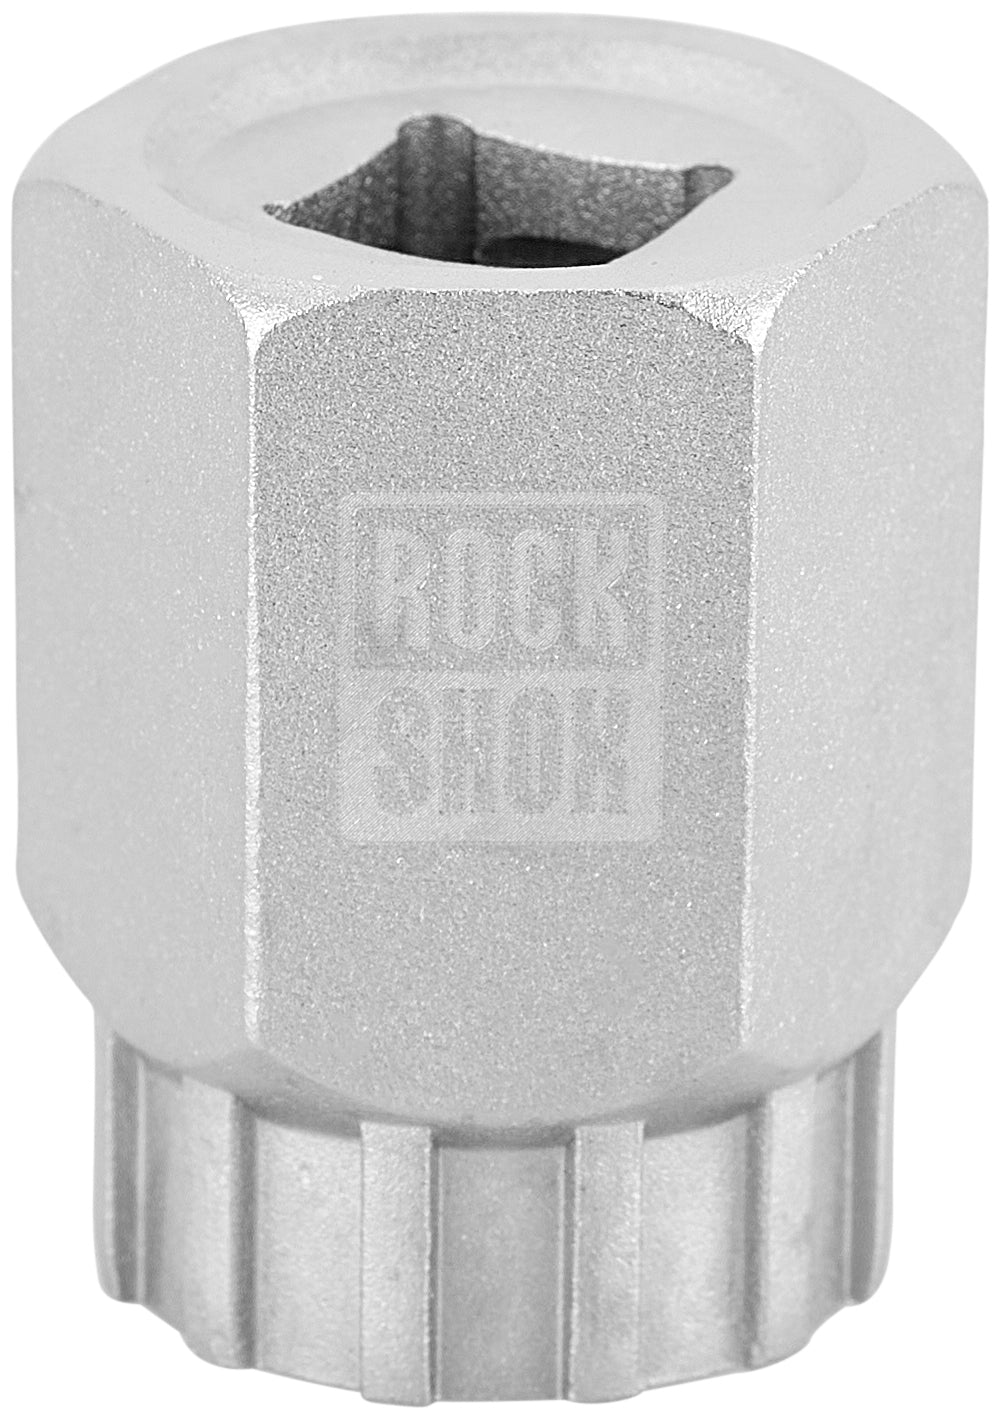 RockShox gereedschap voor topkappen en cassettes van verende vorken Pike/Lyrik/SID/Revelation/Reba/Paragon